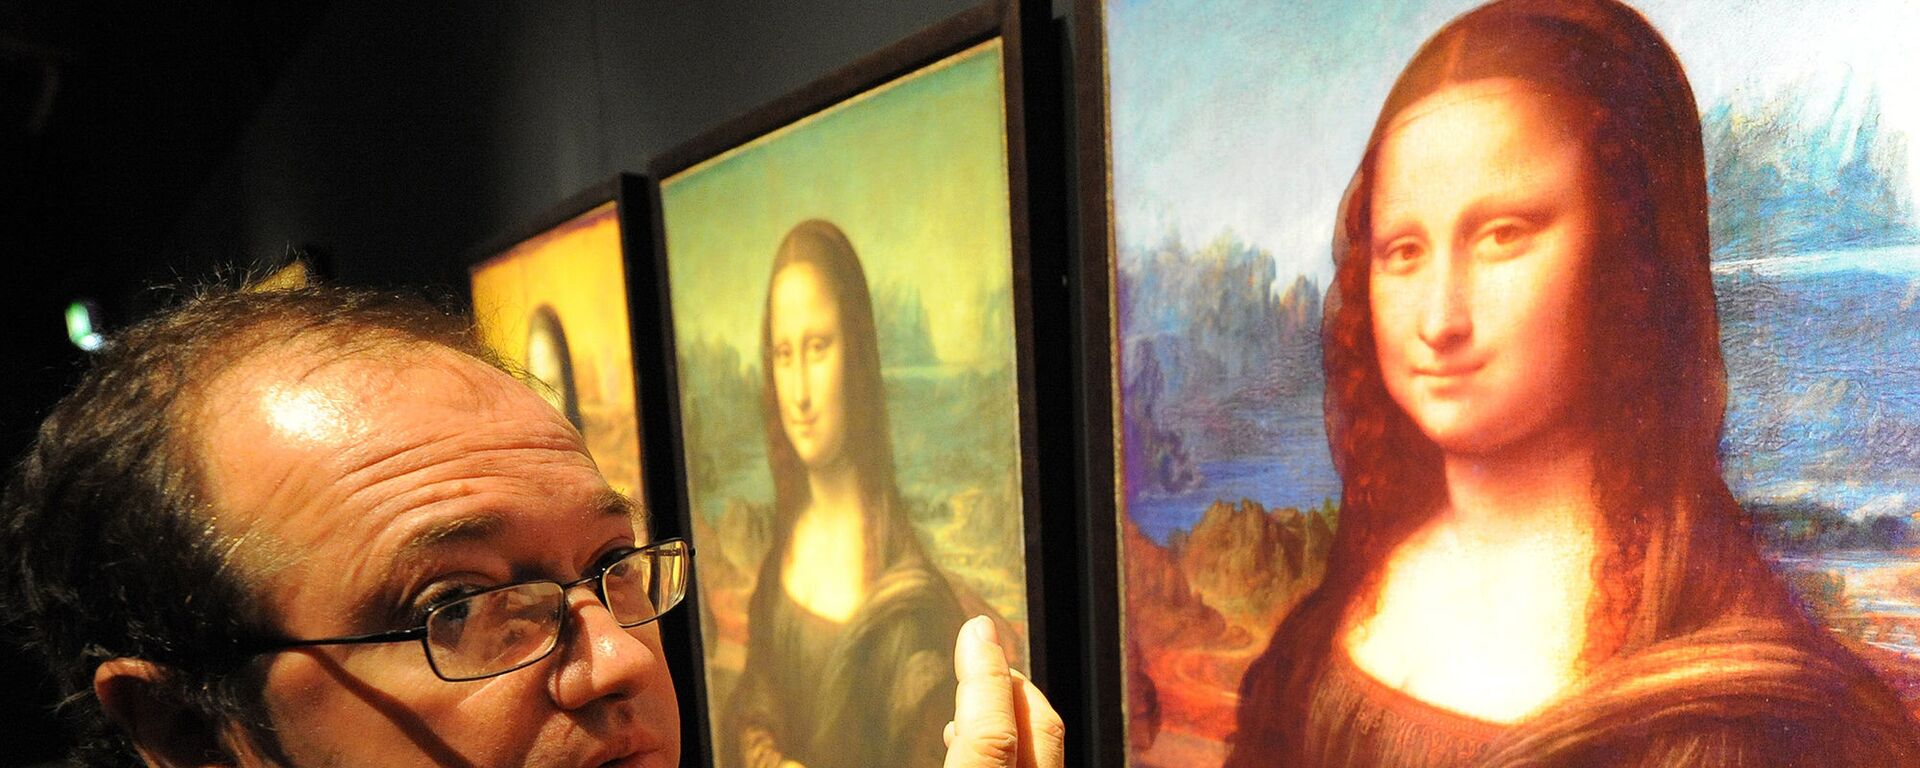 Ученые нашли на картине «Мона Лиза» набросок Леонардо да Винчи, выполненный в необычной технике - Sputnik Казахстан, 1920, 06.10.2020